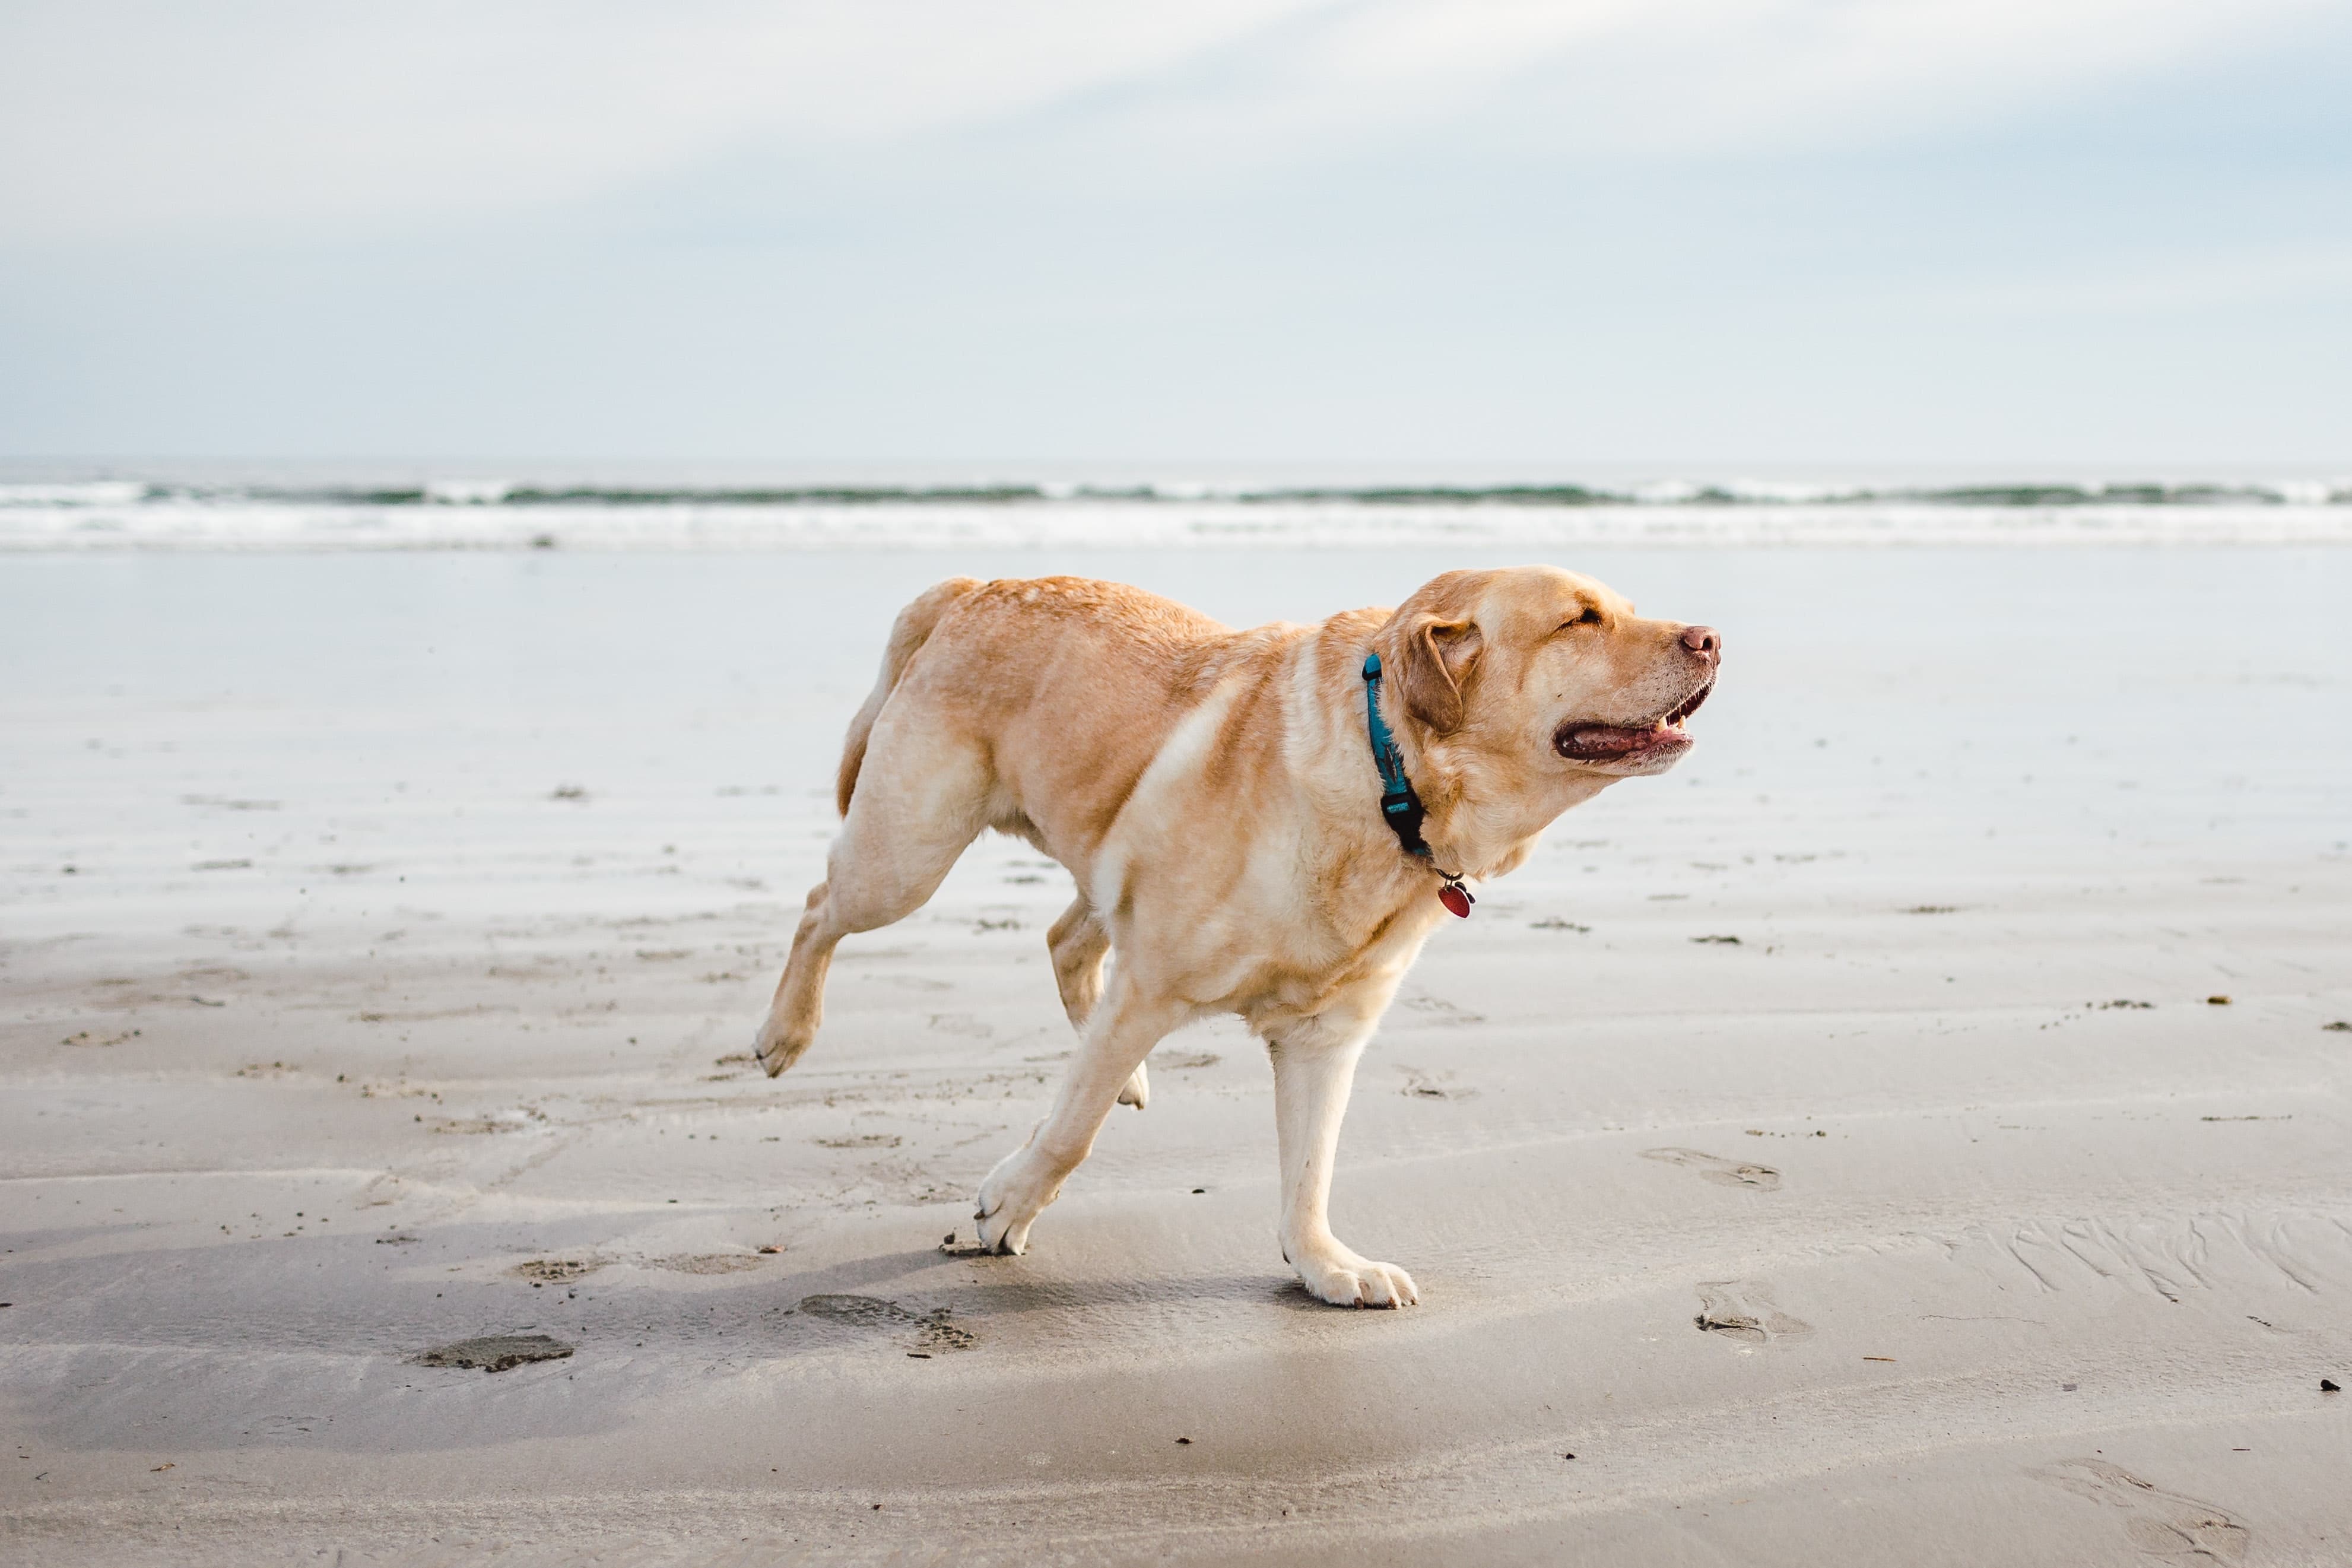 A golden lab dog runs free along a beach